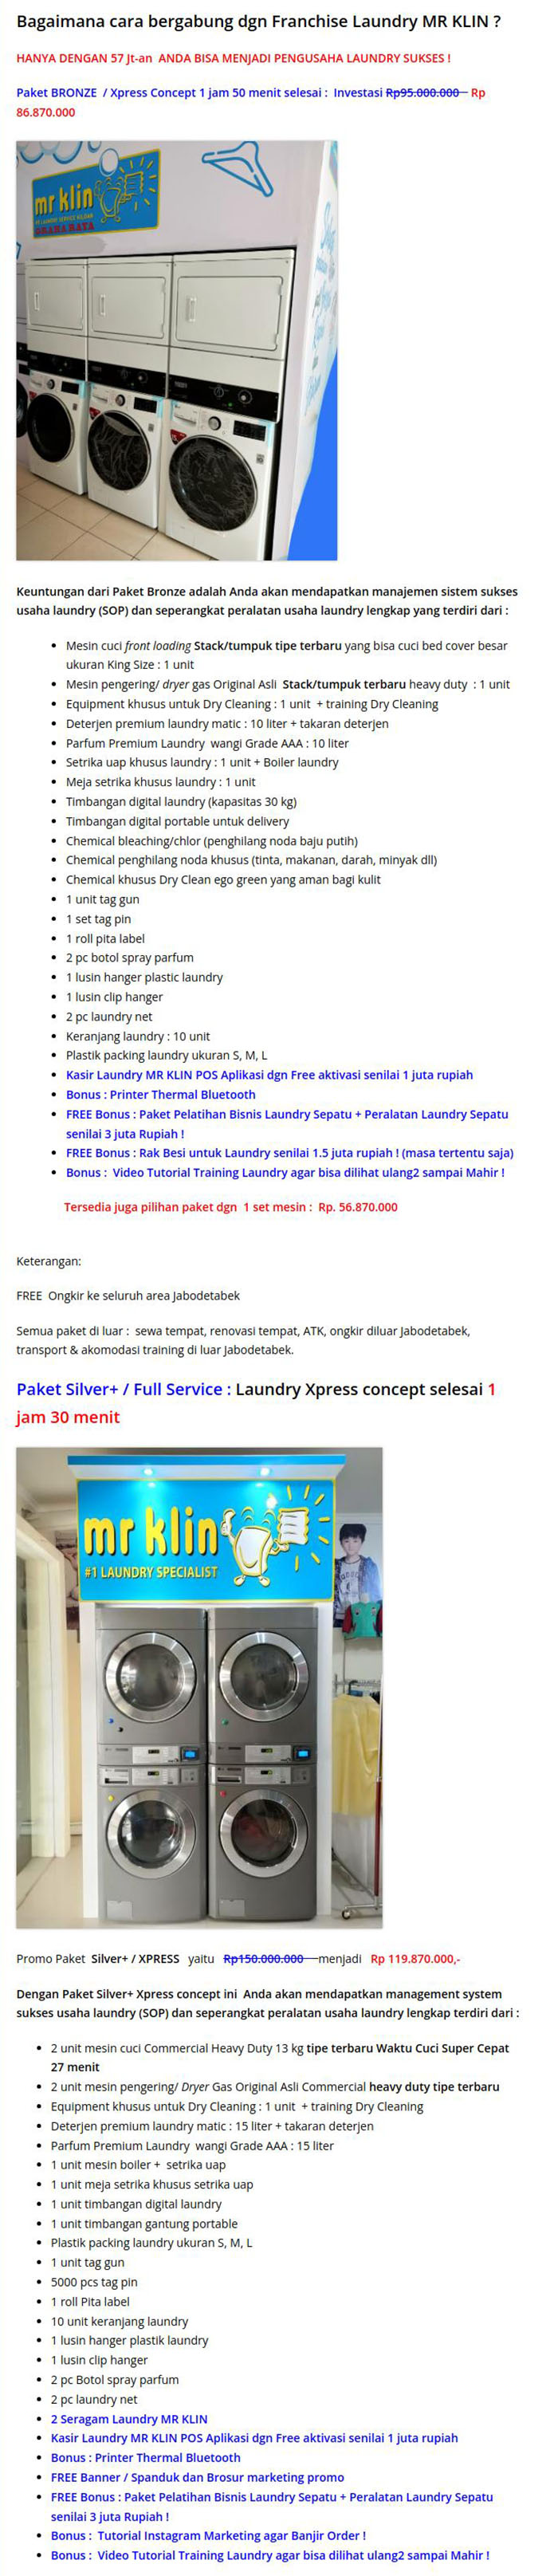 Kemitraan Peluang Bisnis Laundry Mr. Klin